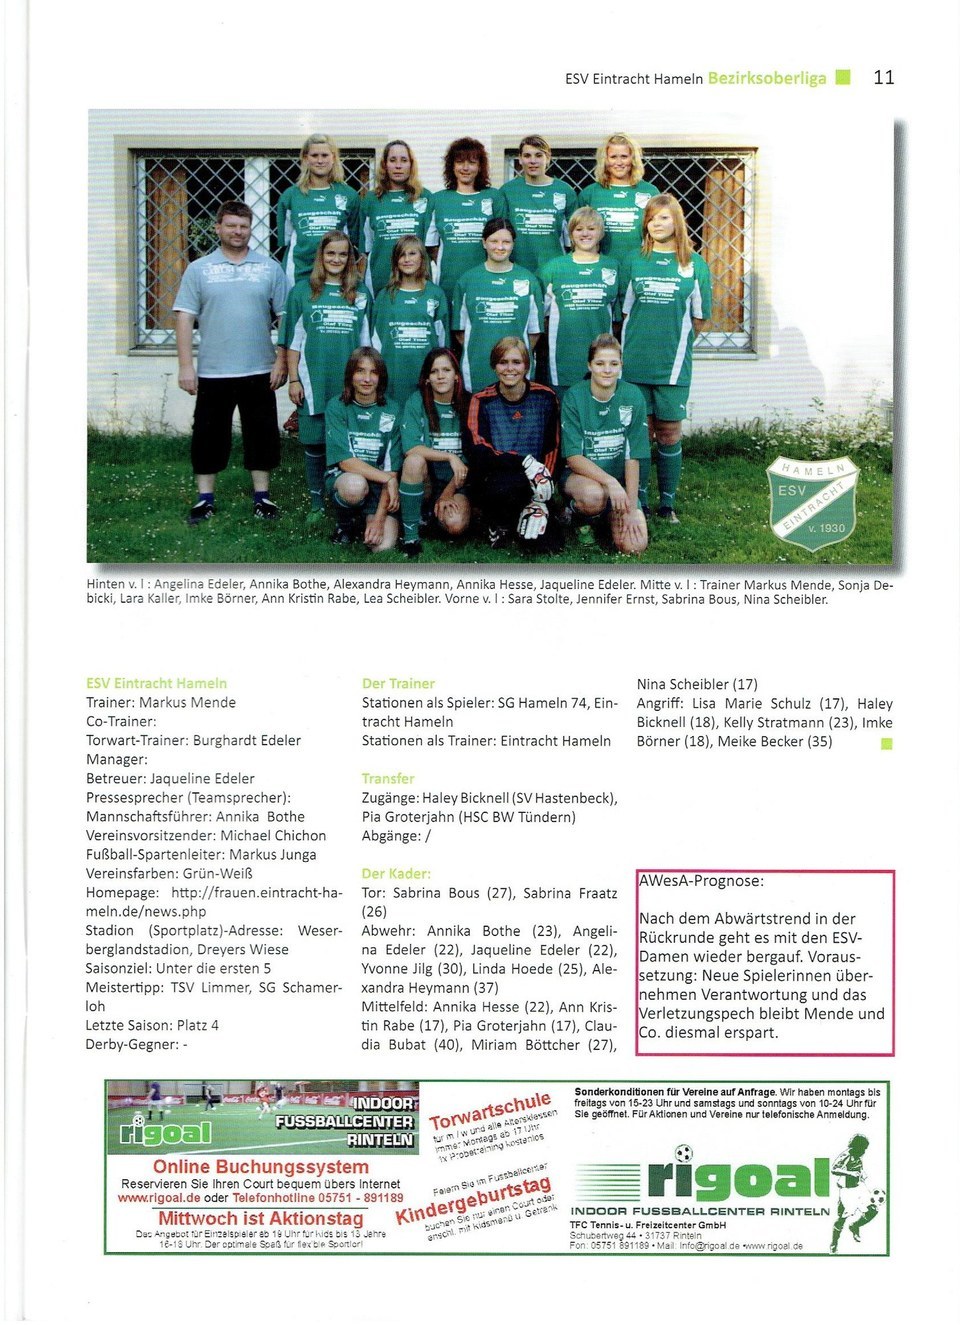 ESV Eintracht Hameln Landesliga Saison 200910